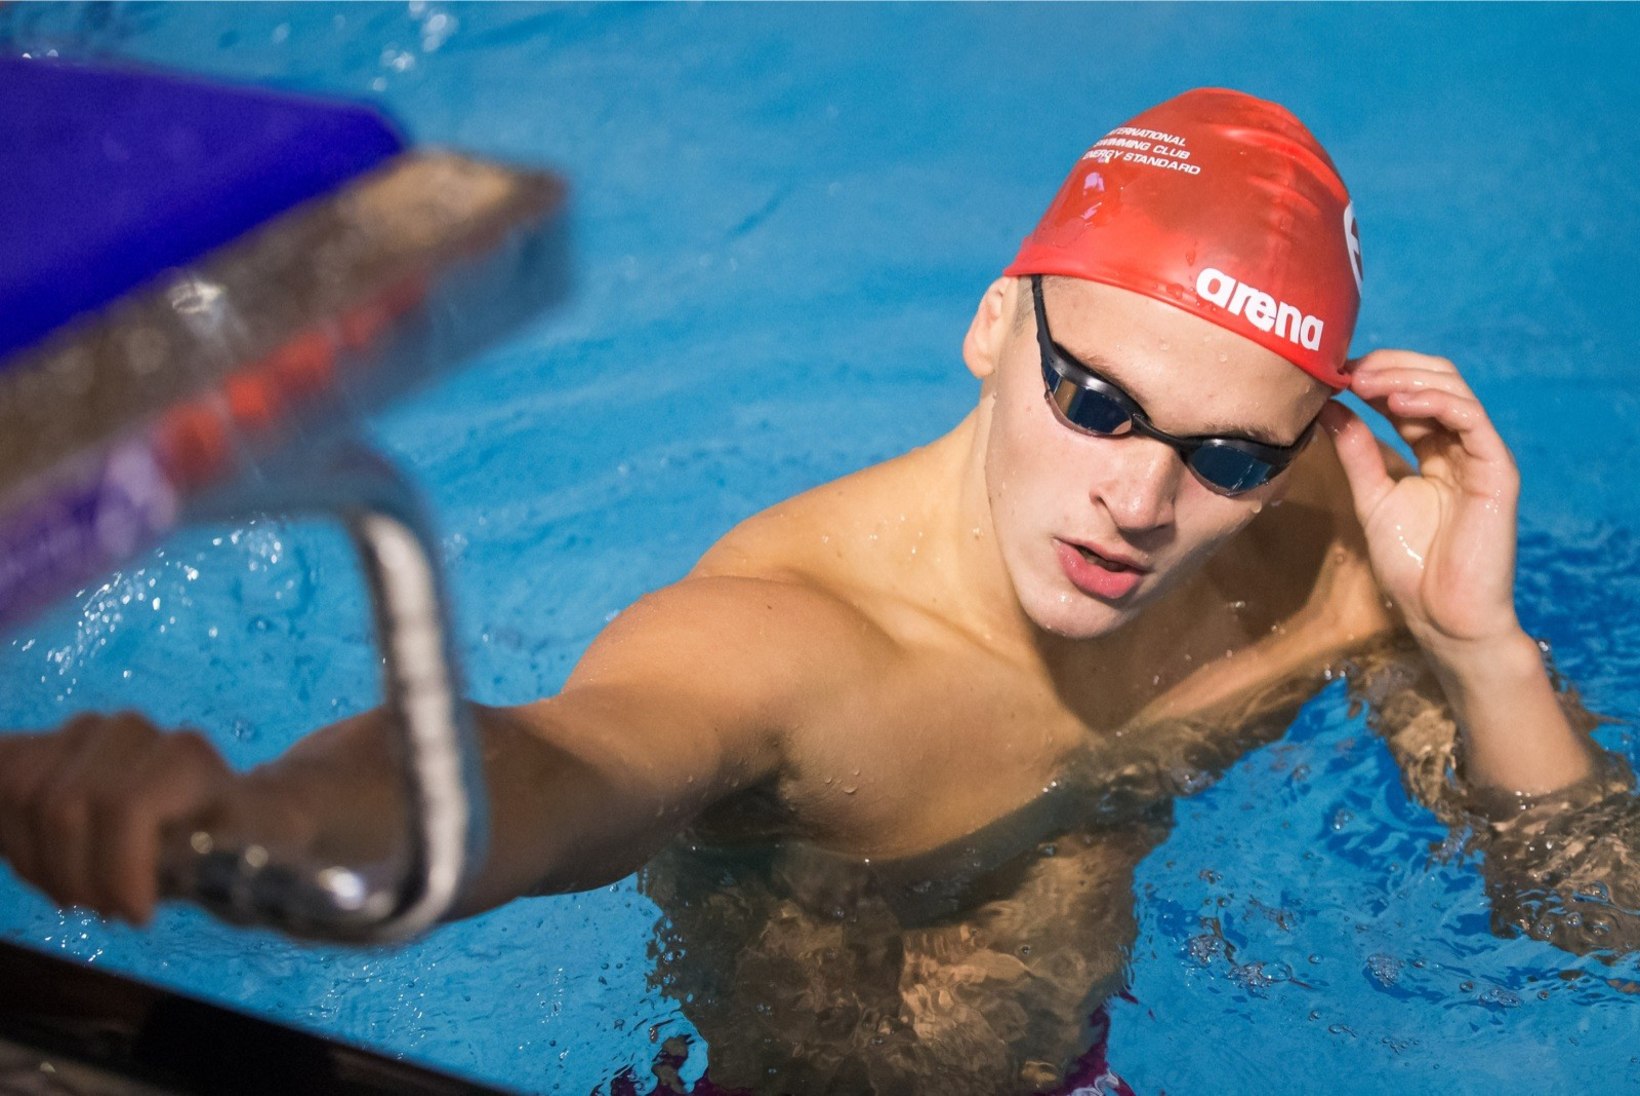 Eesti ujujad purustasid EMil isiklike rekordeid, kuid jäid parematest kaugele maha